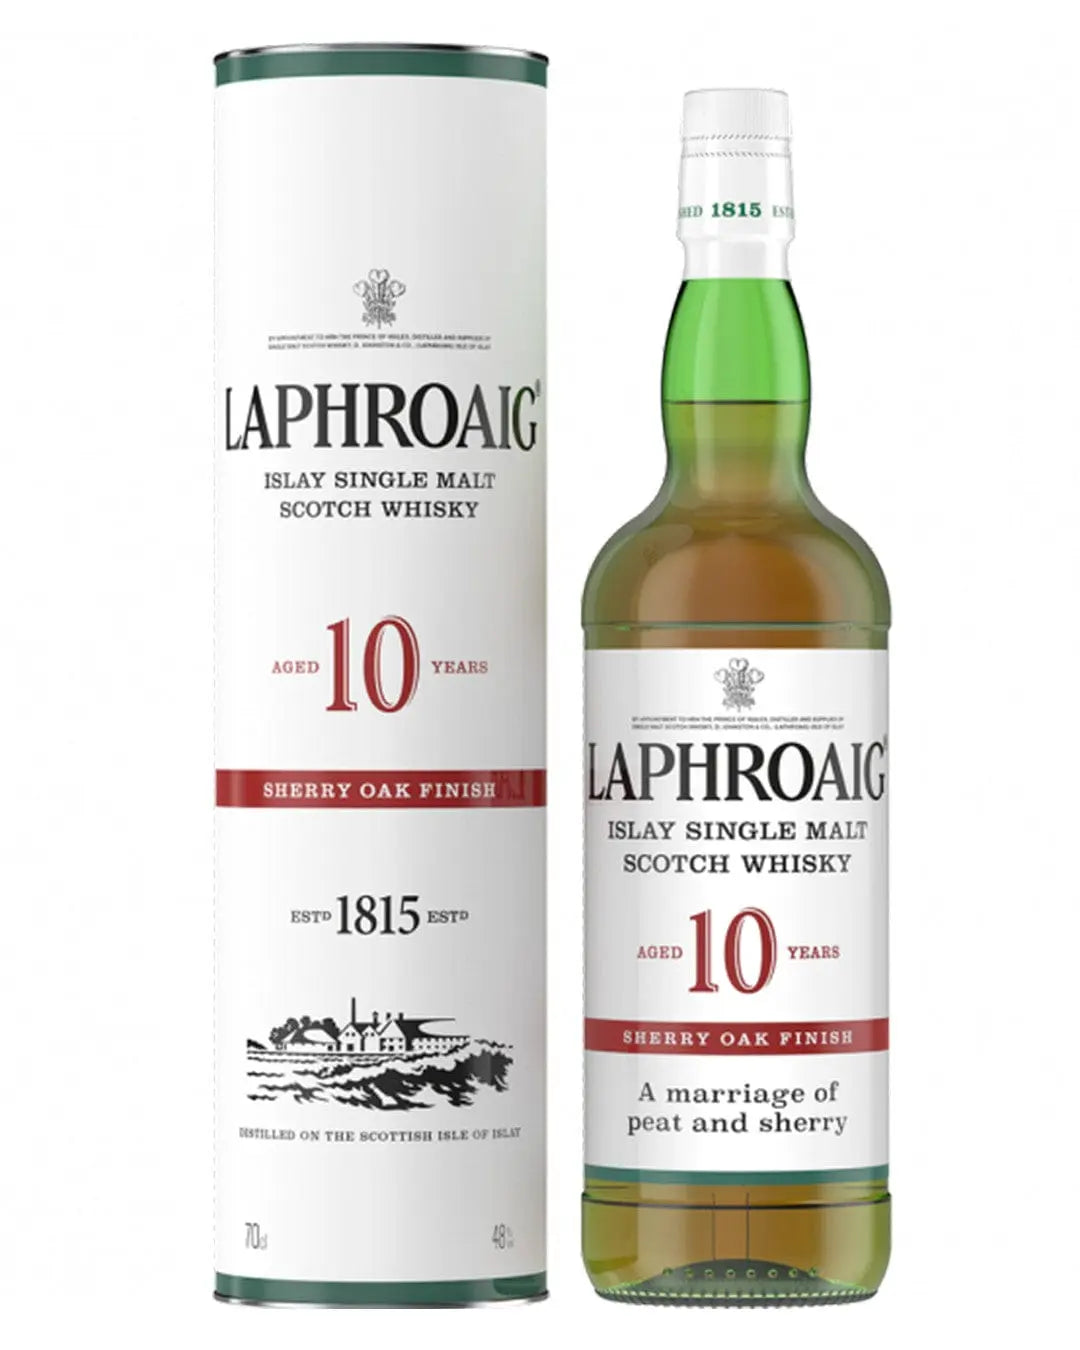 Laphroaig 10 Year Old Sherry Oak Finish Whisky, 70 cl Whisky